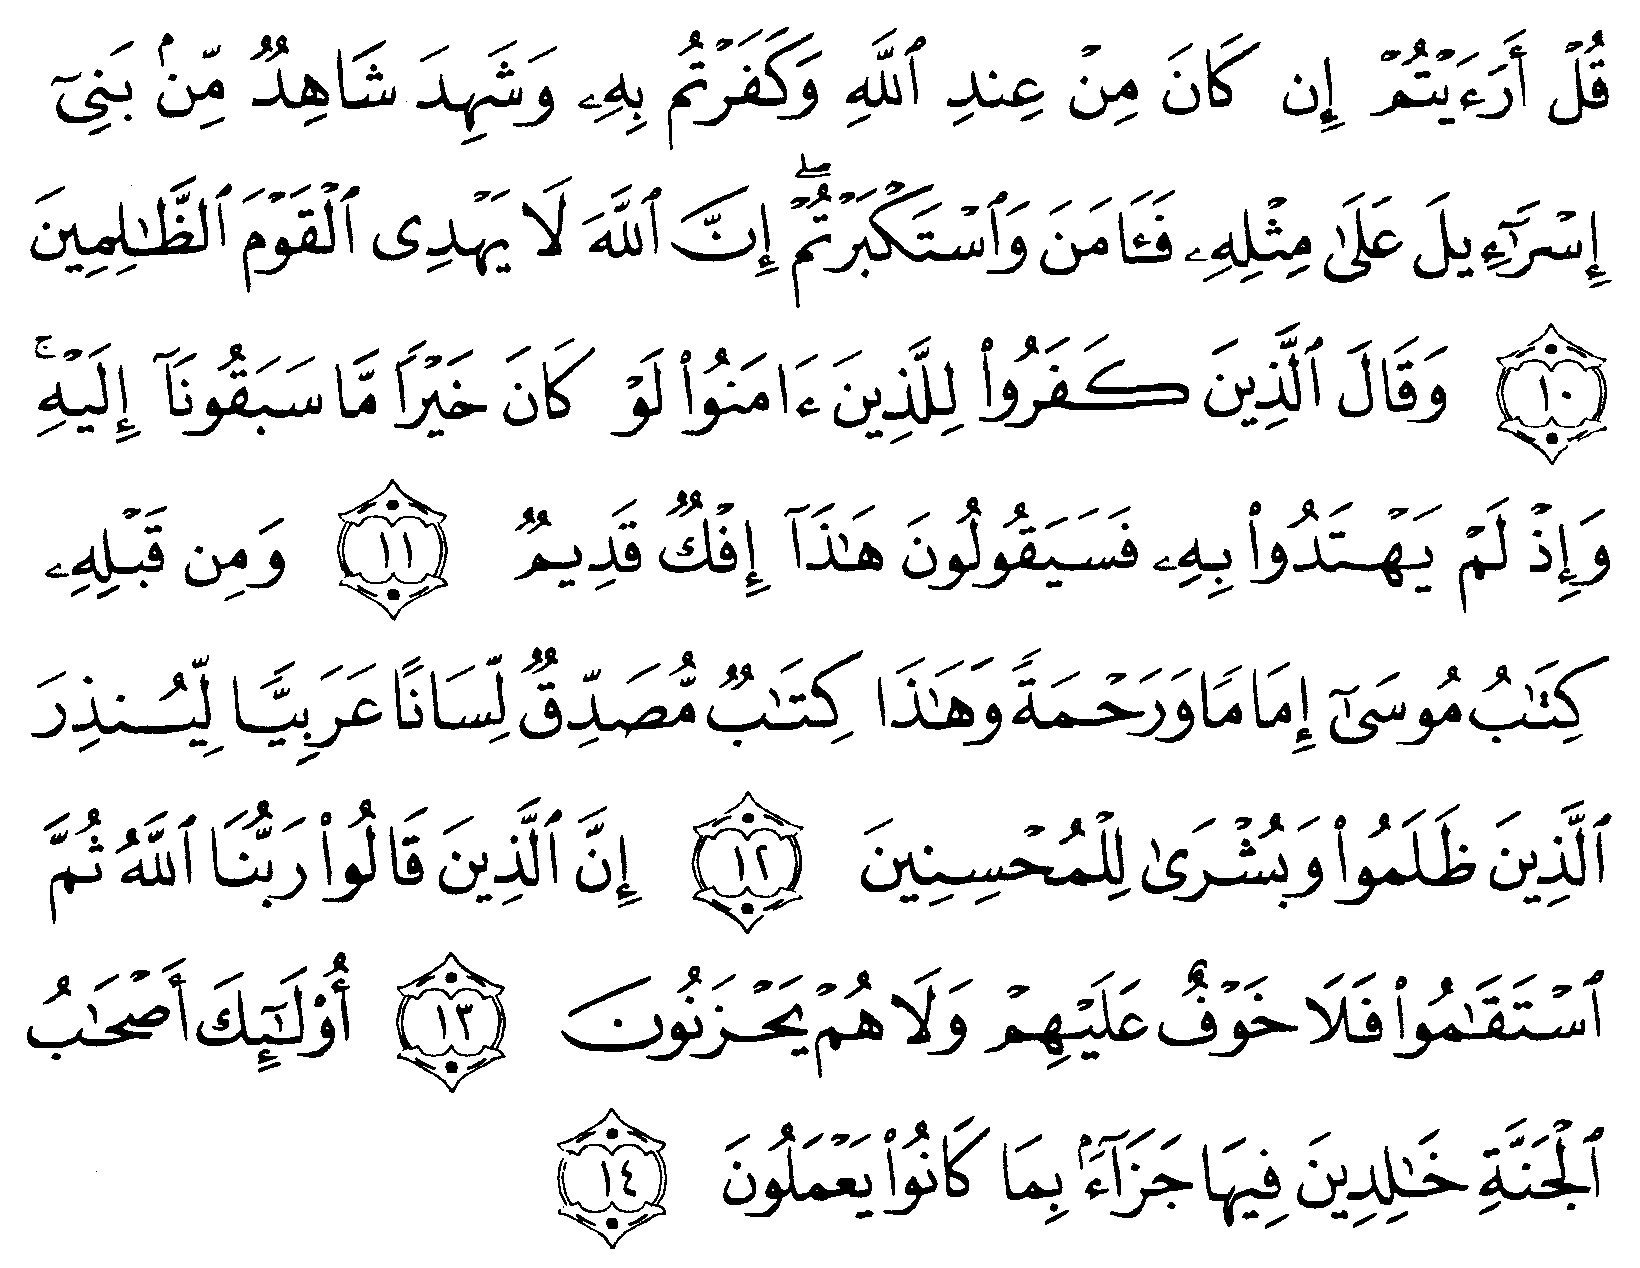 tulisan arab alquran surat al ahqaaf ayat 10 14 “